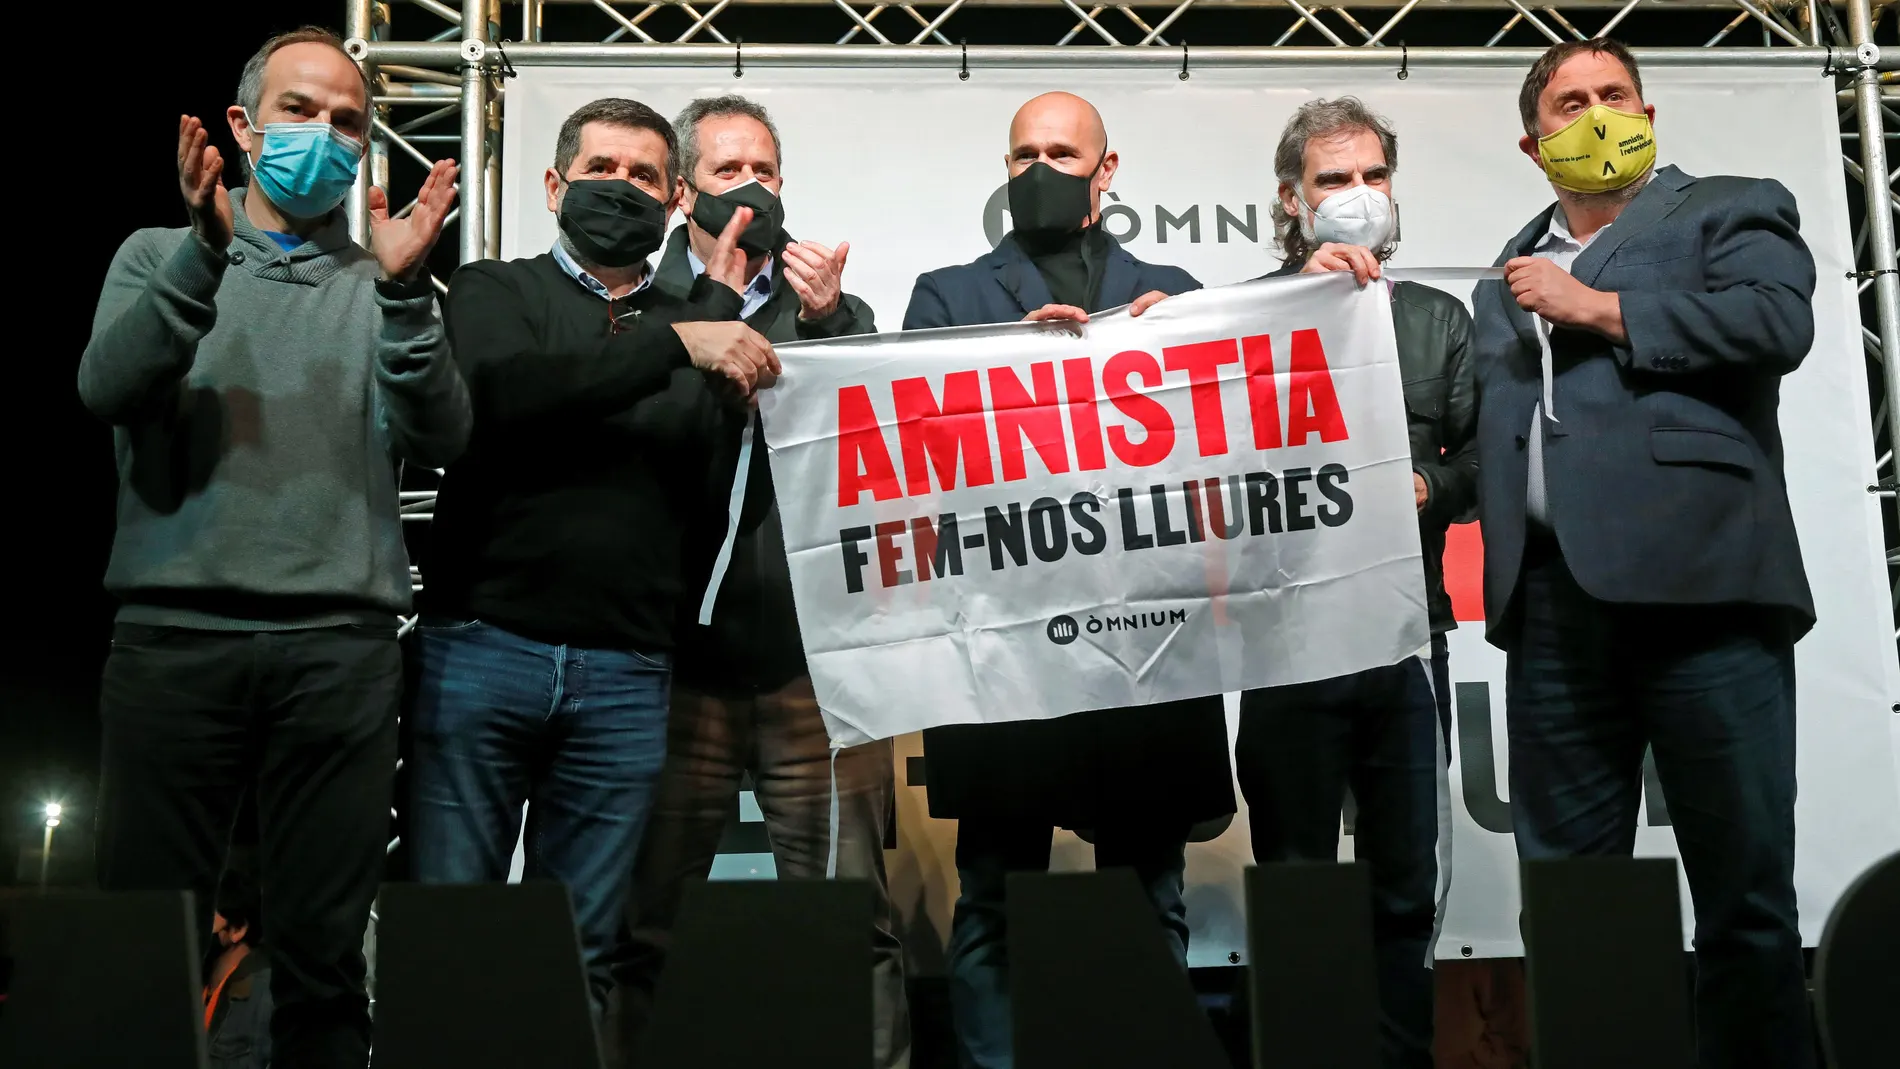 Seis de los presos del procés, Jordi Turull, Jordi Sànchez, Joaquim Forn, Raül Romeva, Jordi Cuixart y Oriol Junqueras, participan en un acto organizado por Òmnium